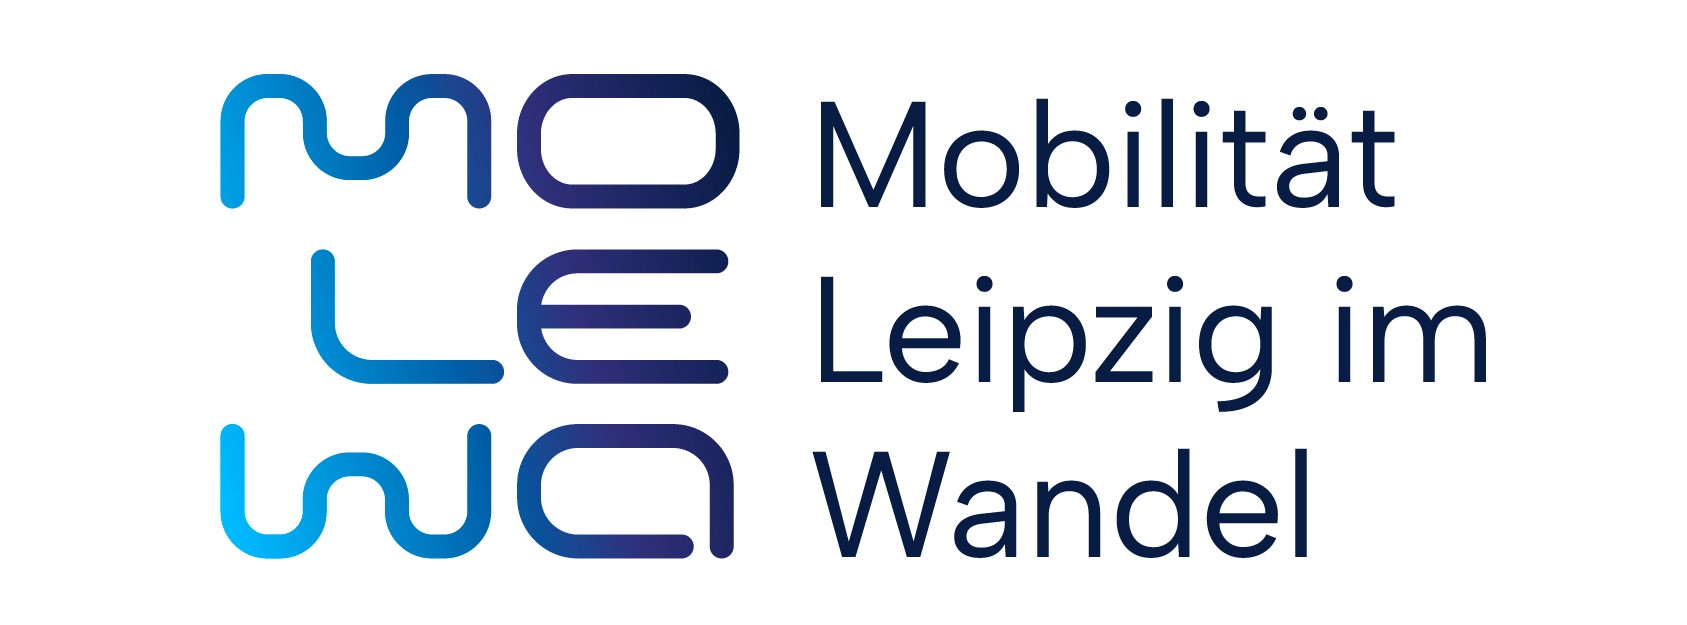 Mobilität Leipzig im Wandel